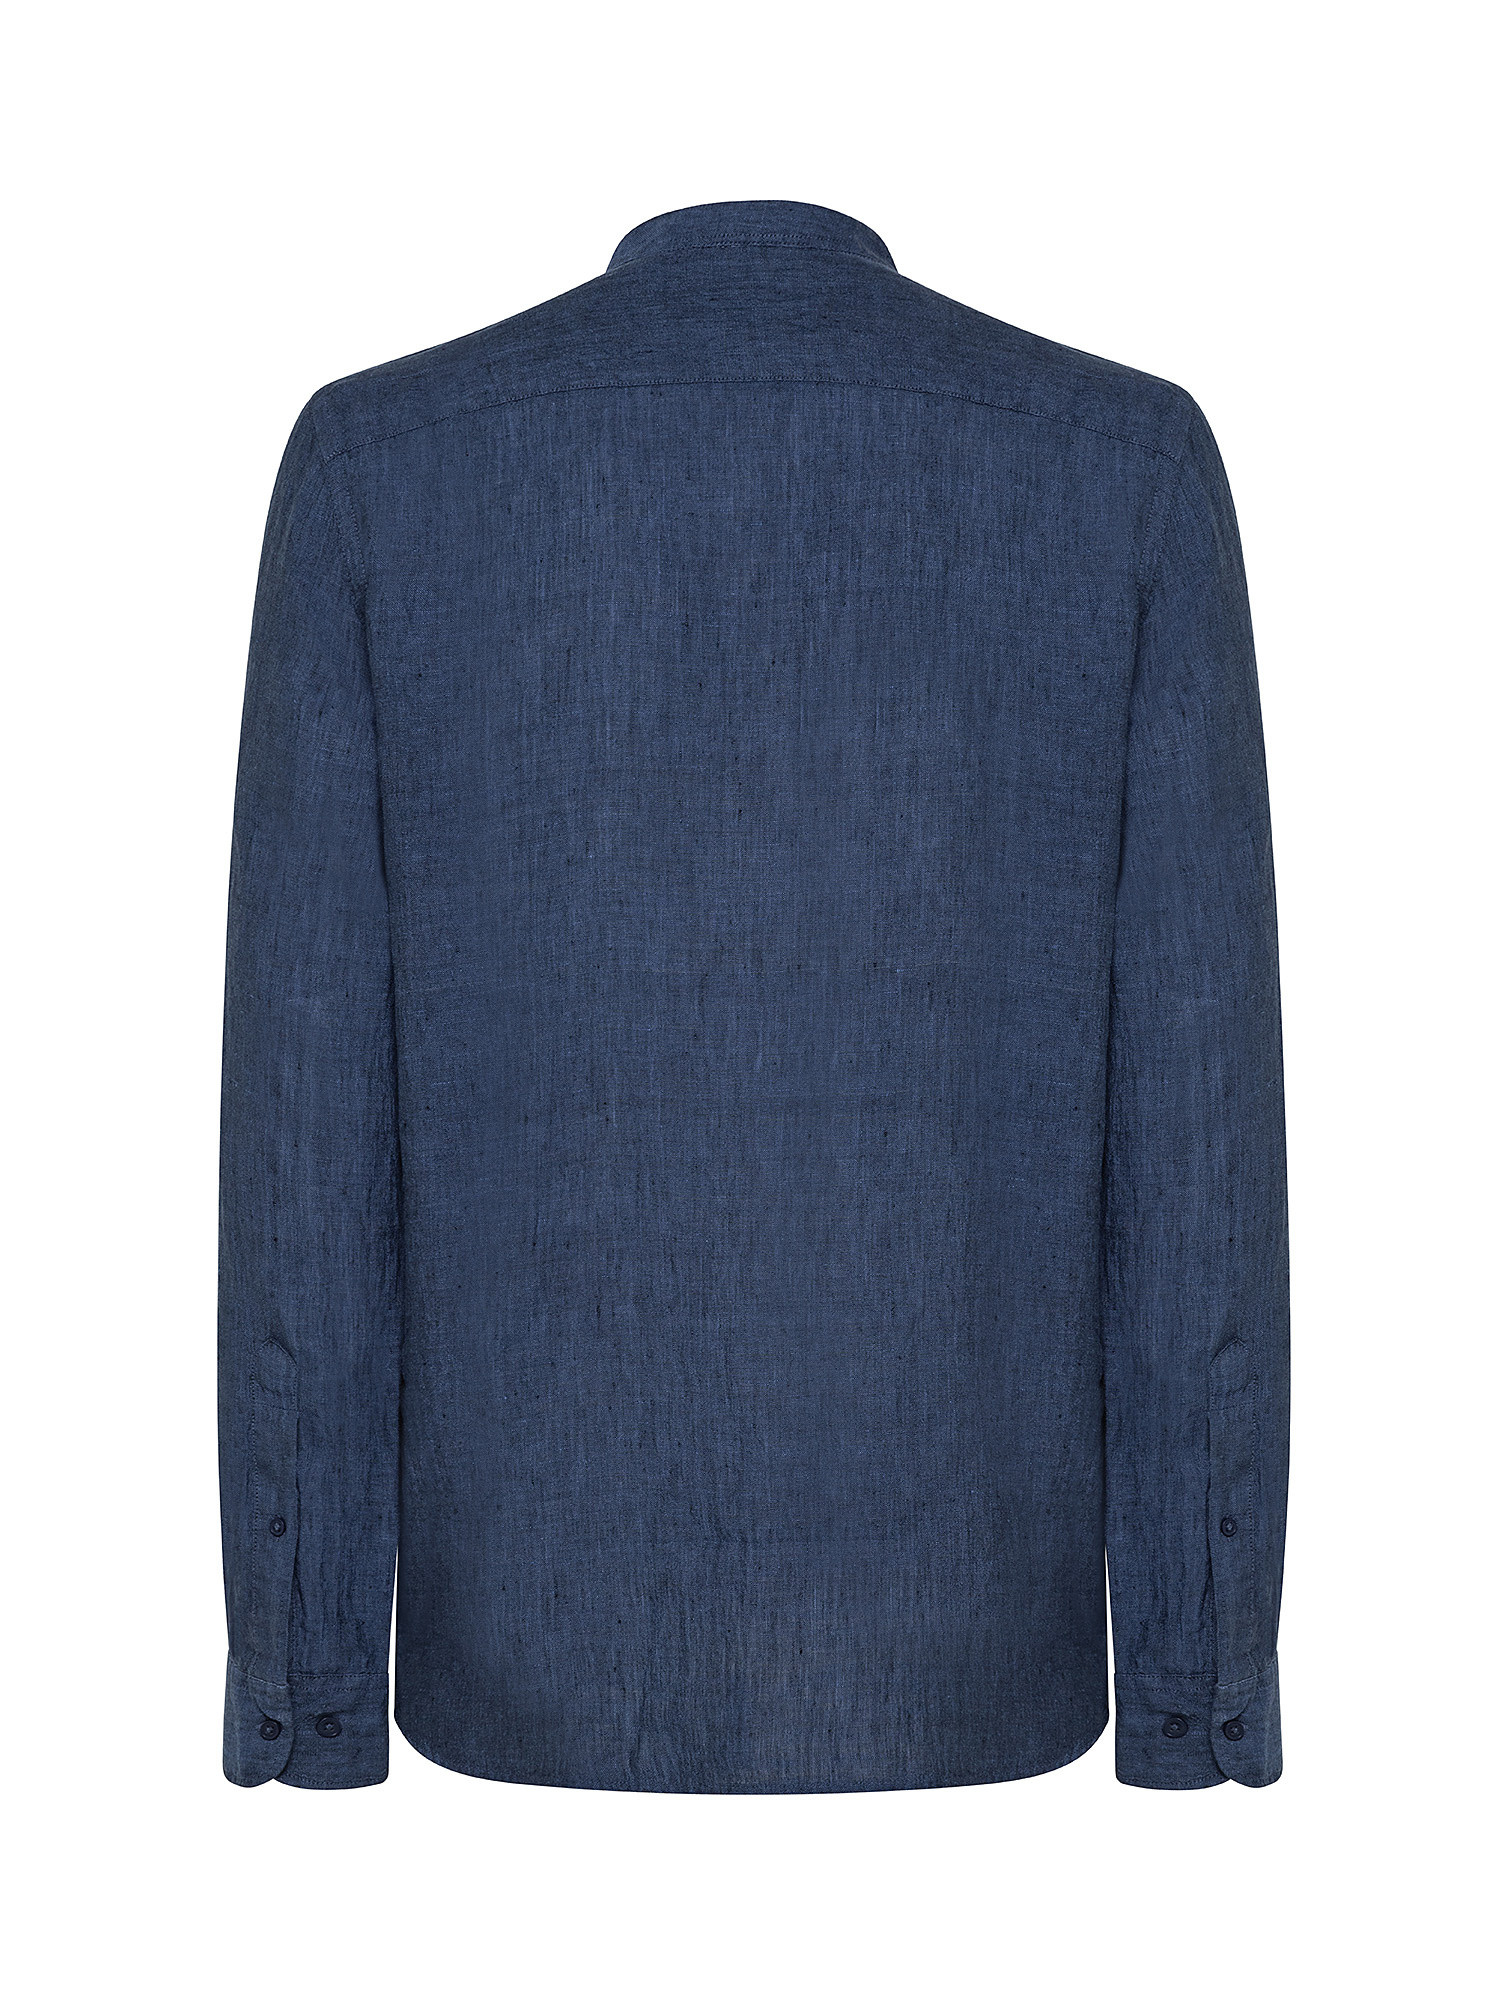 Camicia puro lino collo coreana, Blu, large image number 1